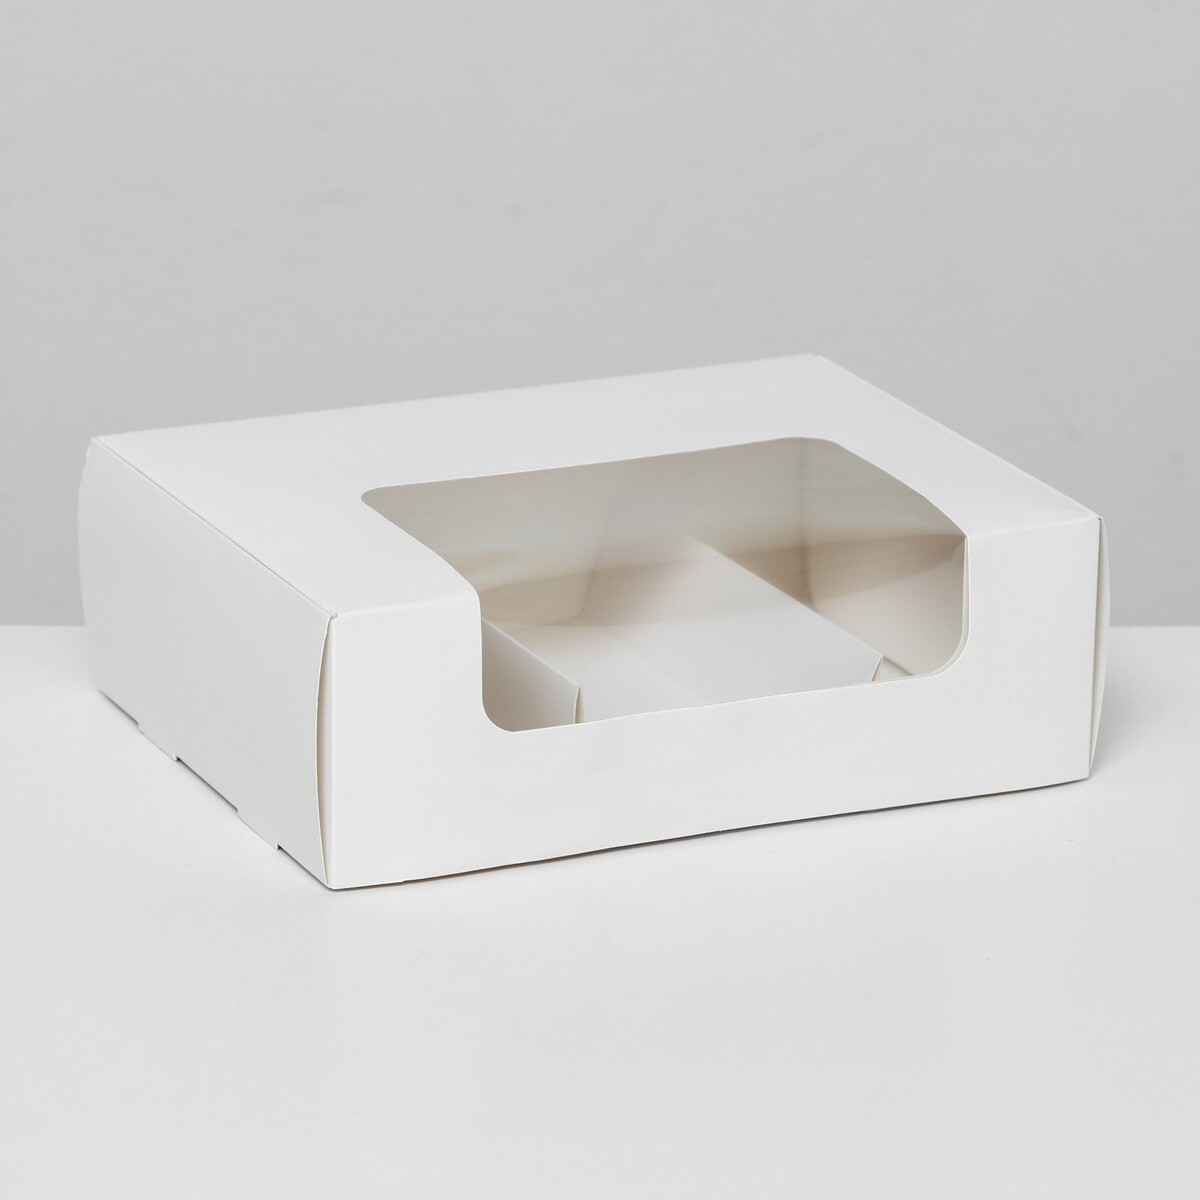 Коробка складная, под 3 эклера, белая, 20 x 15 x 6 см коробка складная под 3 конфеты белая 5 х 13 7 х 3 5 см